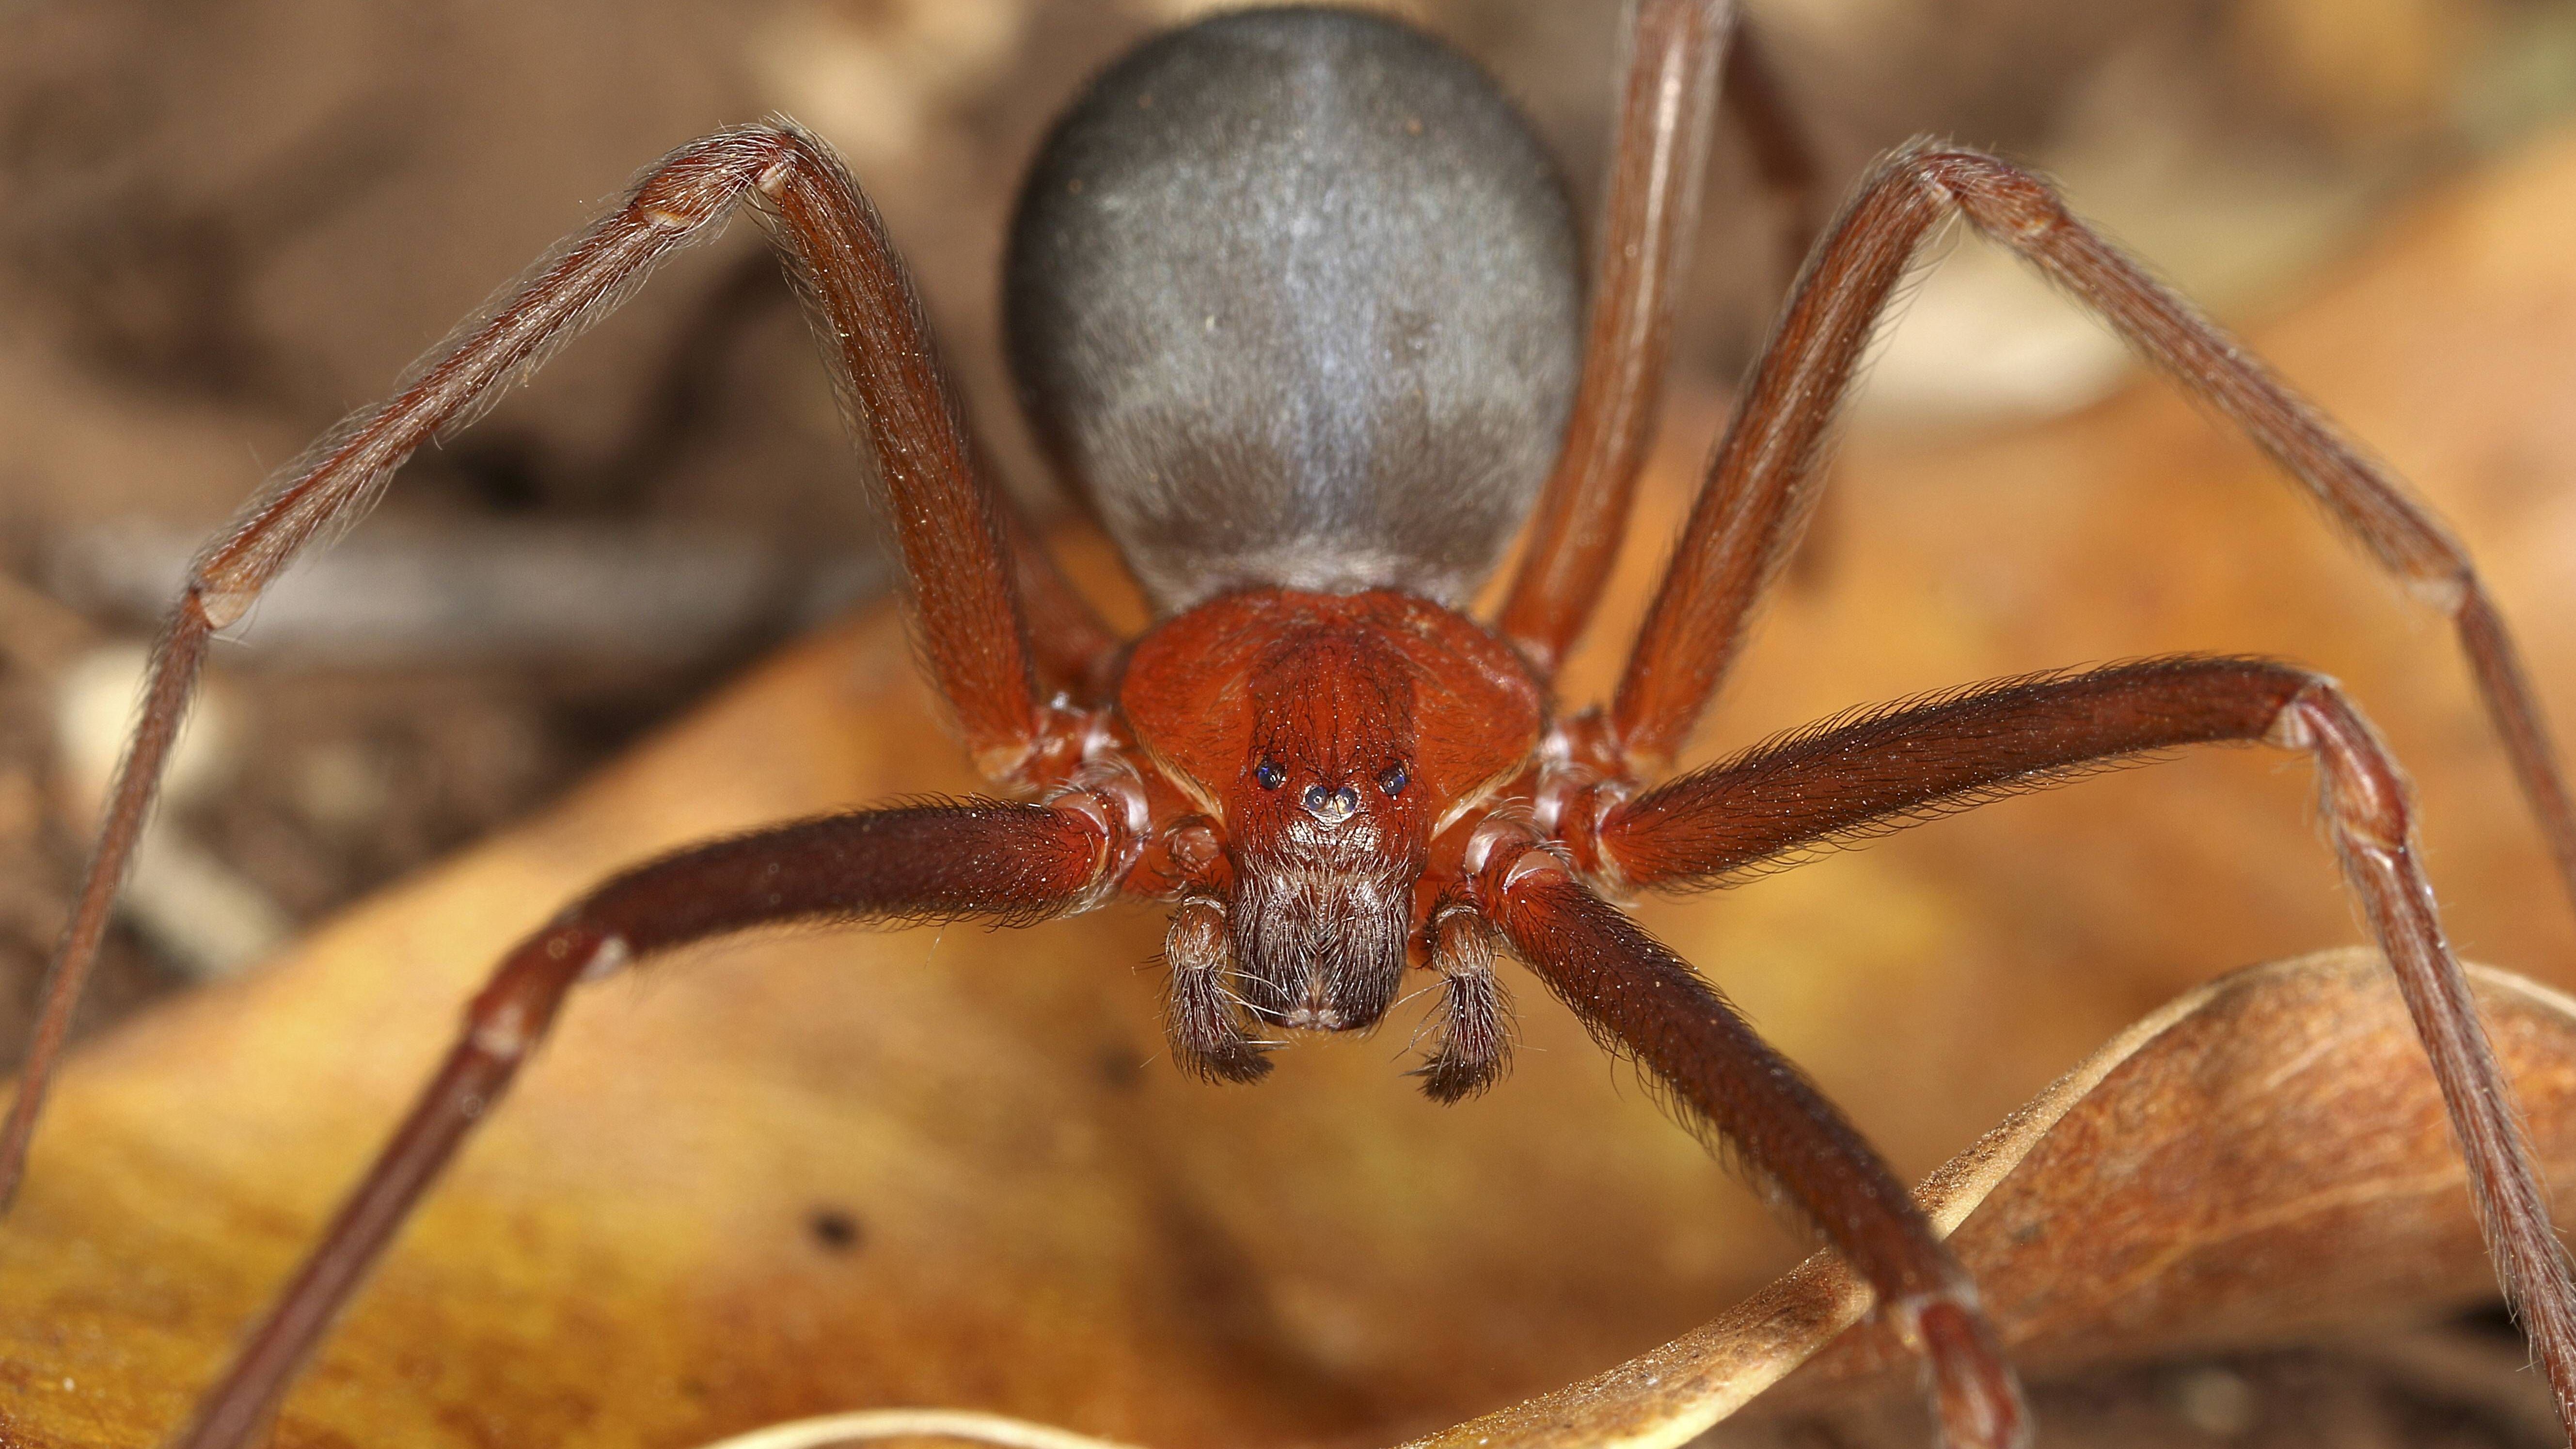 Manche Spinnen wie die Sechsäugige Sandspinne (Bild) haben nur sechs Augen: In der Mitte sitzen zwei Augen, seitlich davon jeweils zwei weitere. Die großen Hauptaugen fehlen.